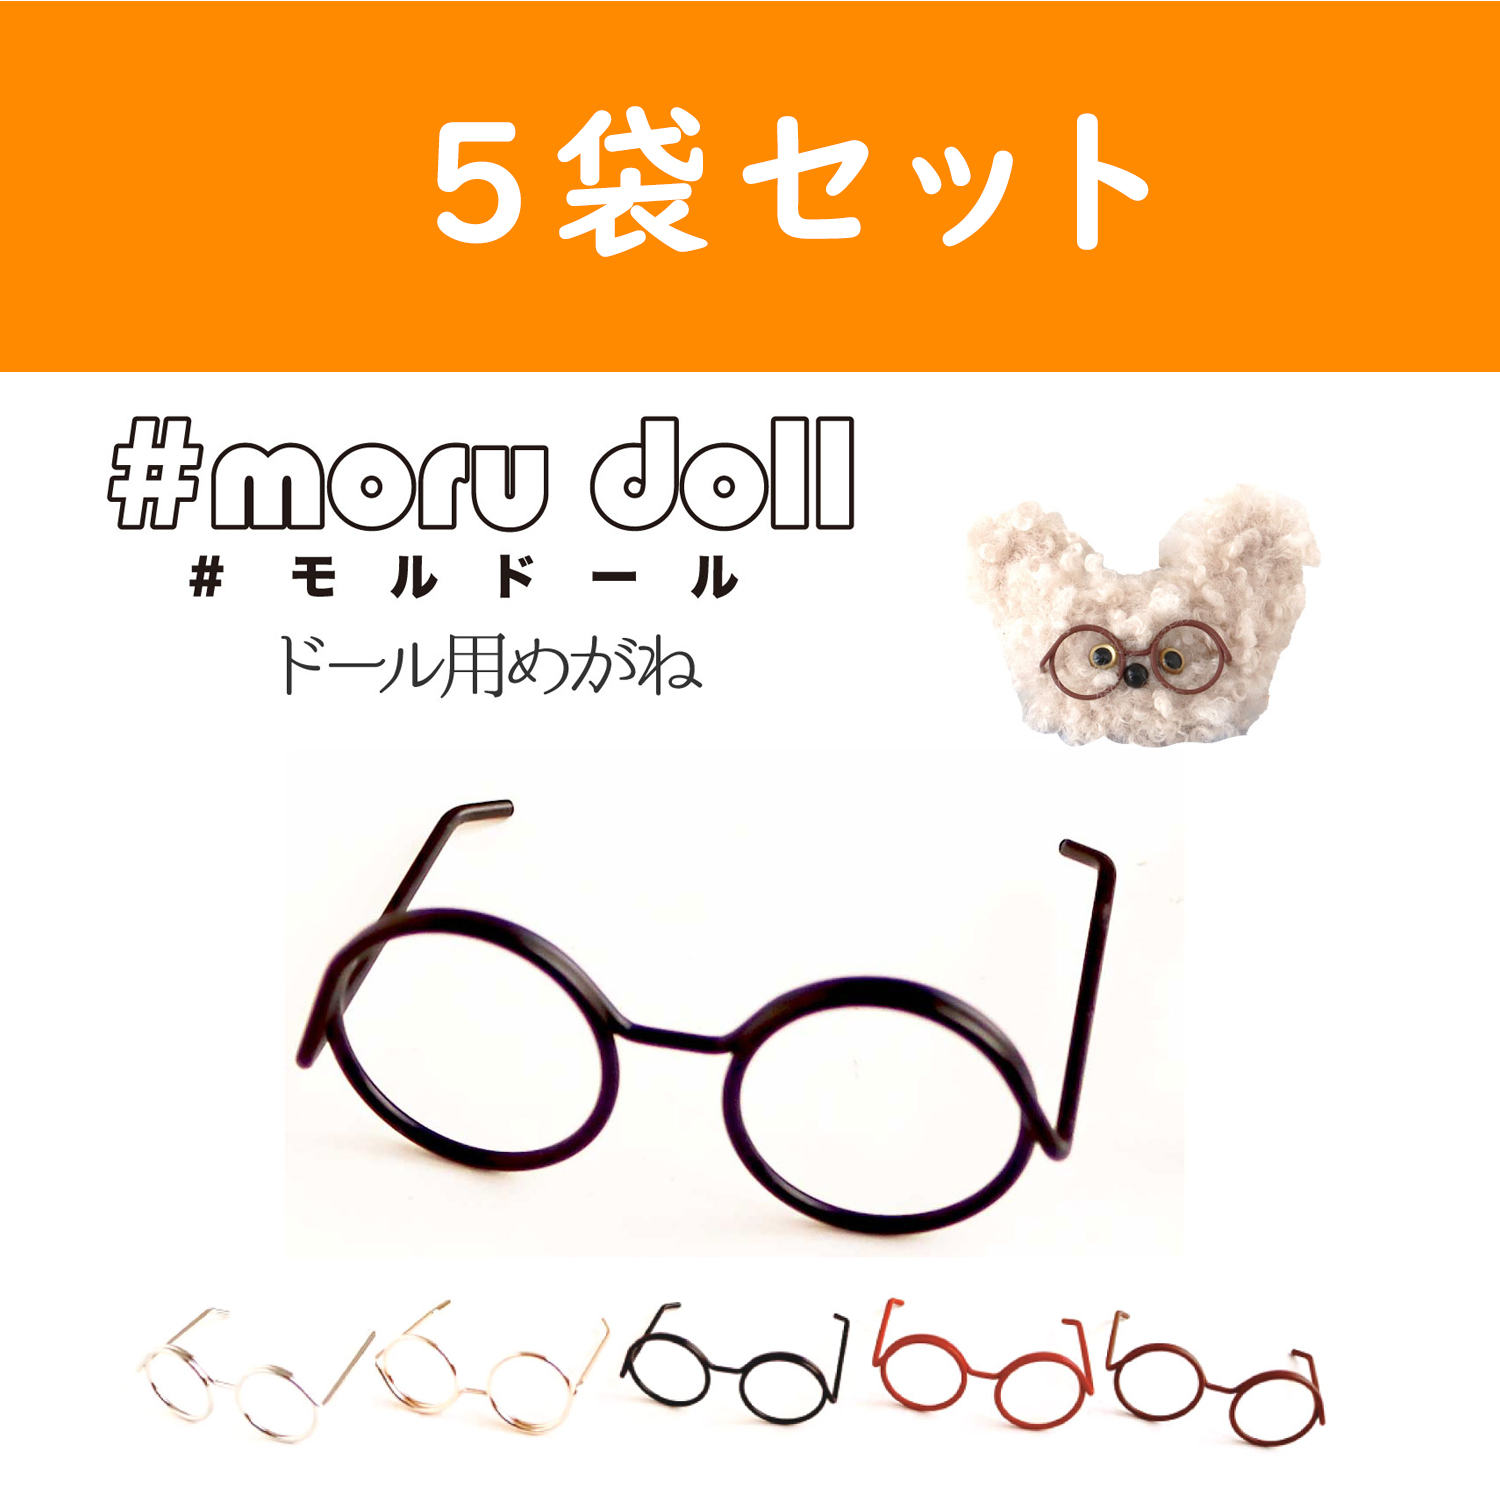 MOL-5 モール人形 モールドール  めがねパーツ 1個入×5袋セット (セット)